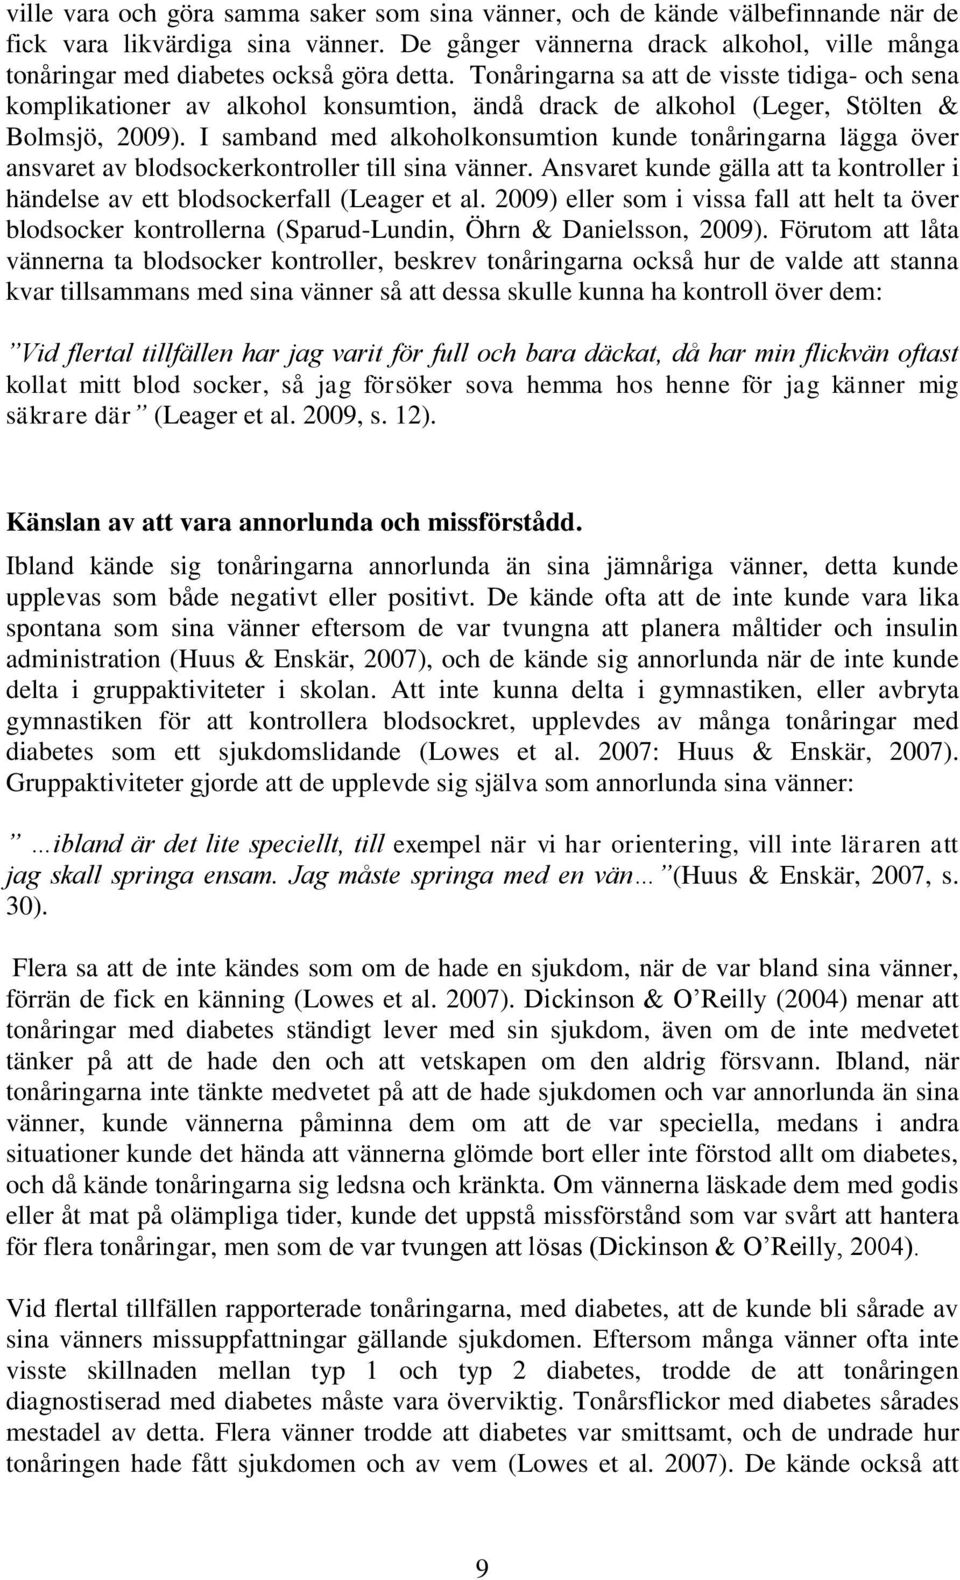 Tonåringarna sa att de visste tidiga- och sena komplikationer av alkohol konsumtion, ändå drack de alkohol (Leger, Stölten & Bolmsjö, 2009).